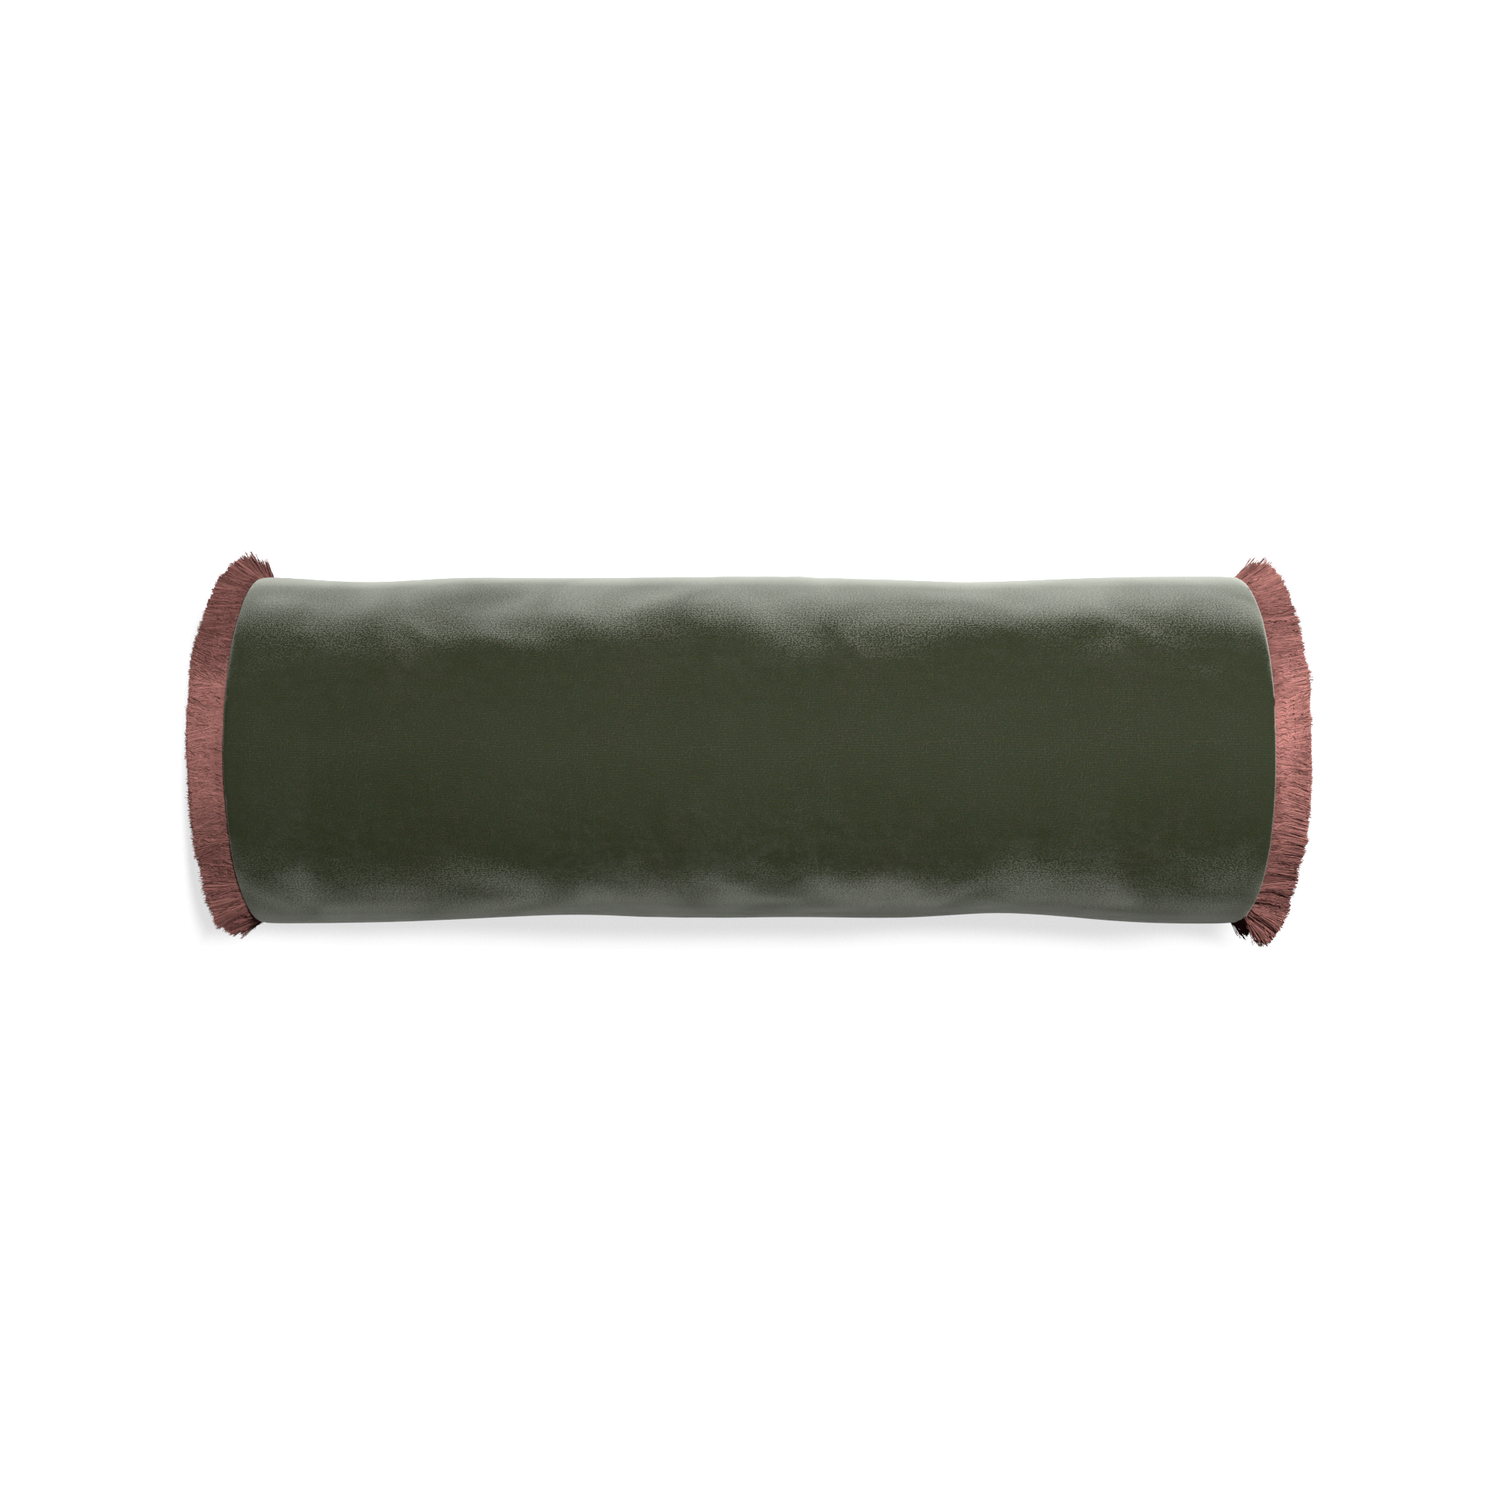 bolster fern green velvet pillow with dusty rose fringe